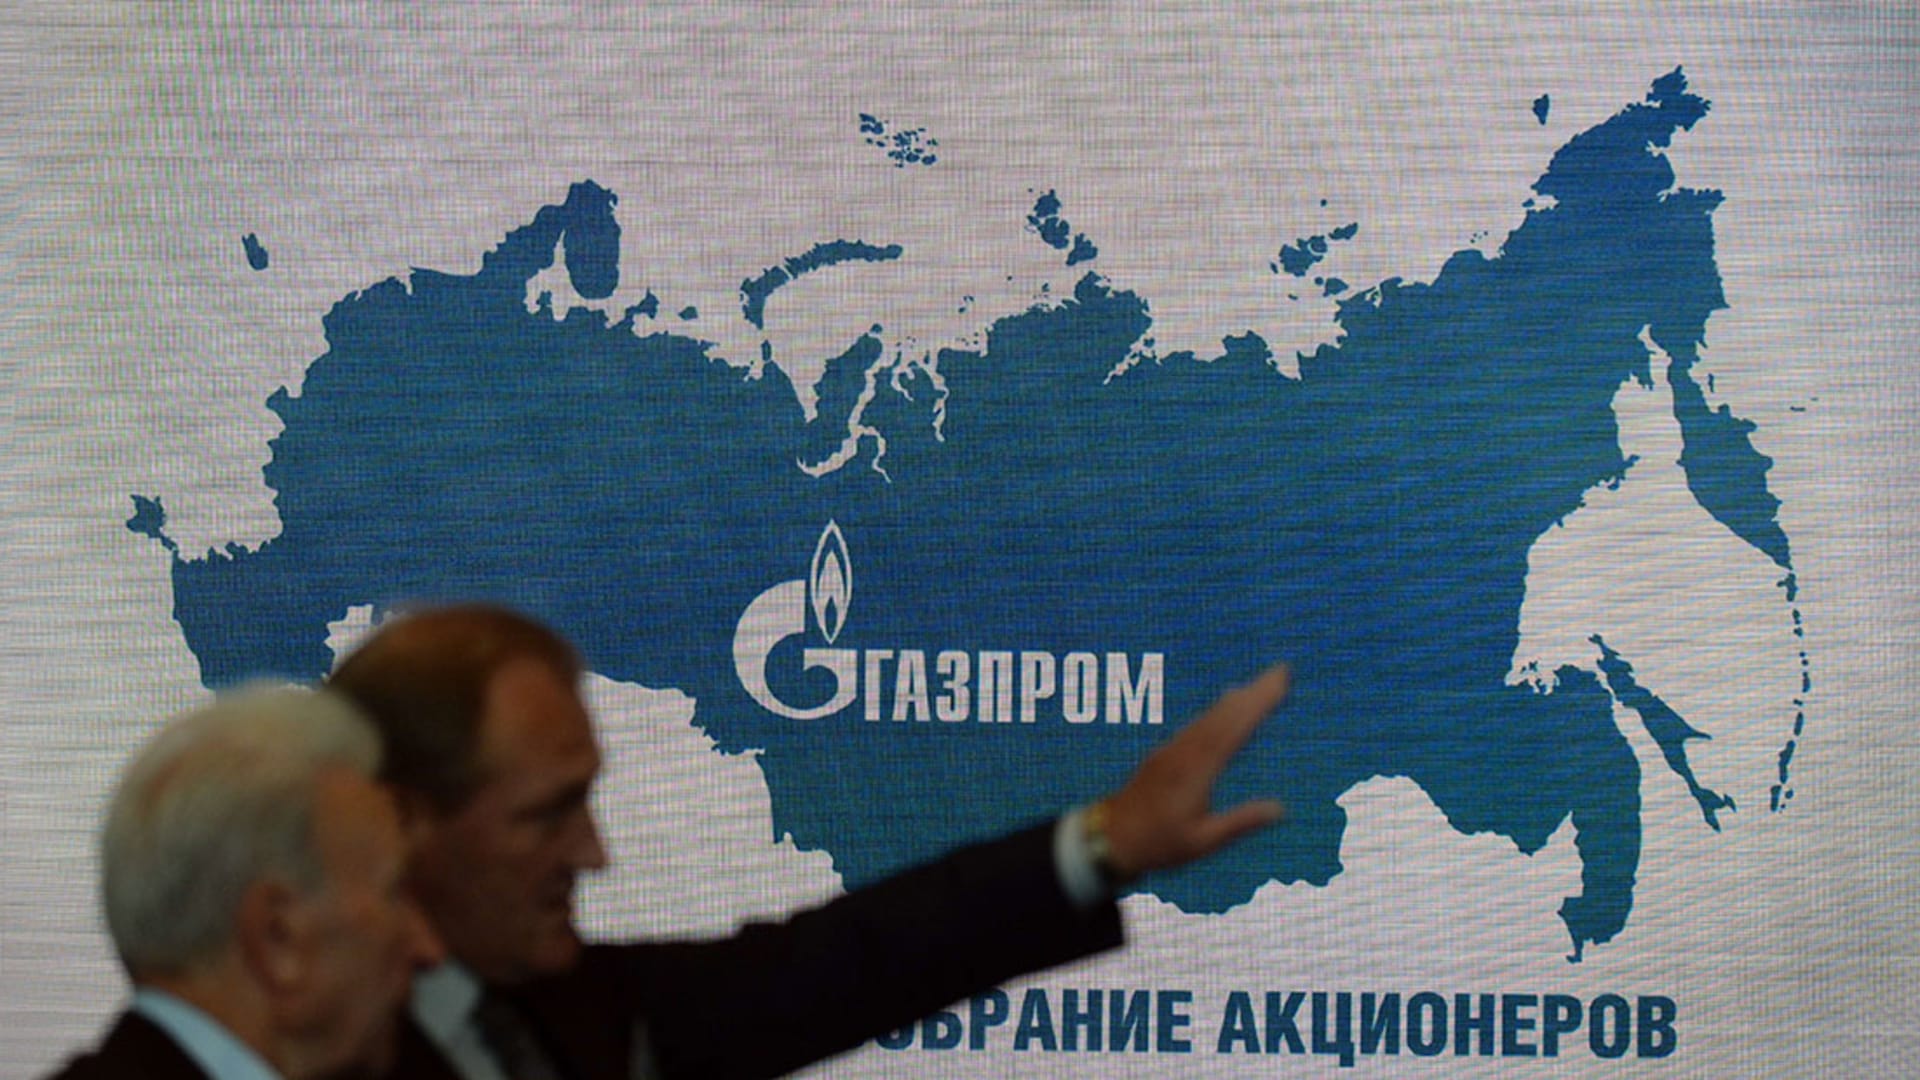 بالأرقام.. روسيا تكشف حجم صادرات الغاز منذ بداية العام مقارنة بالعام الماضي